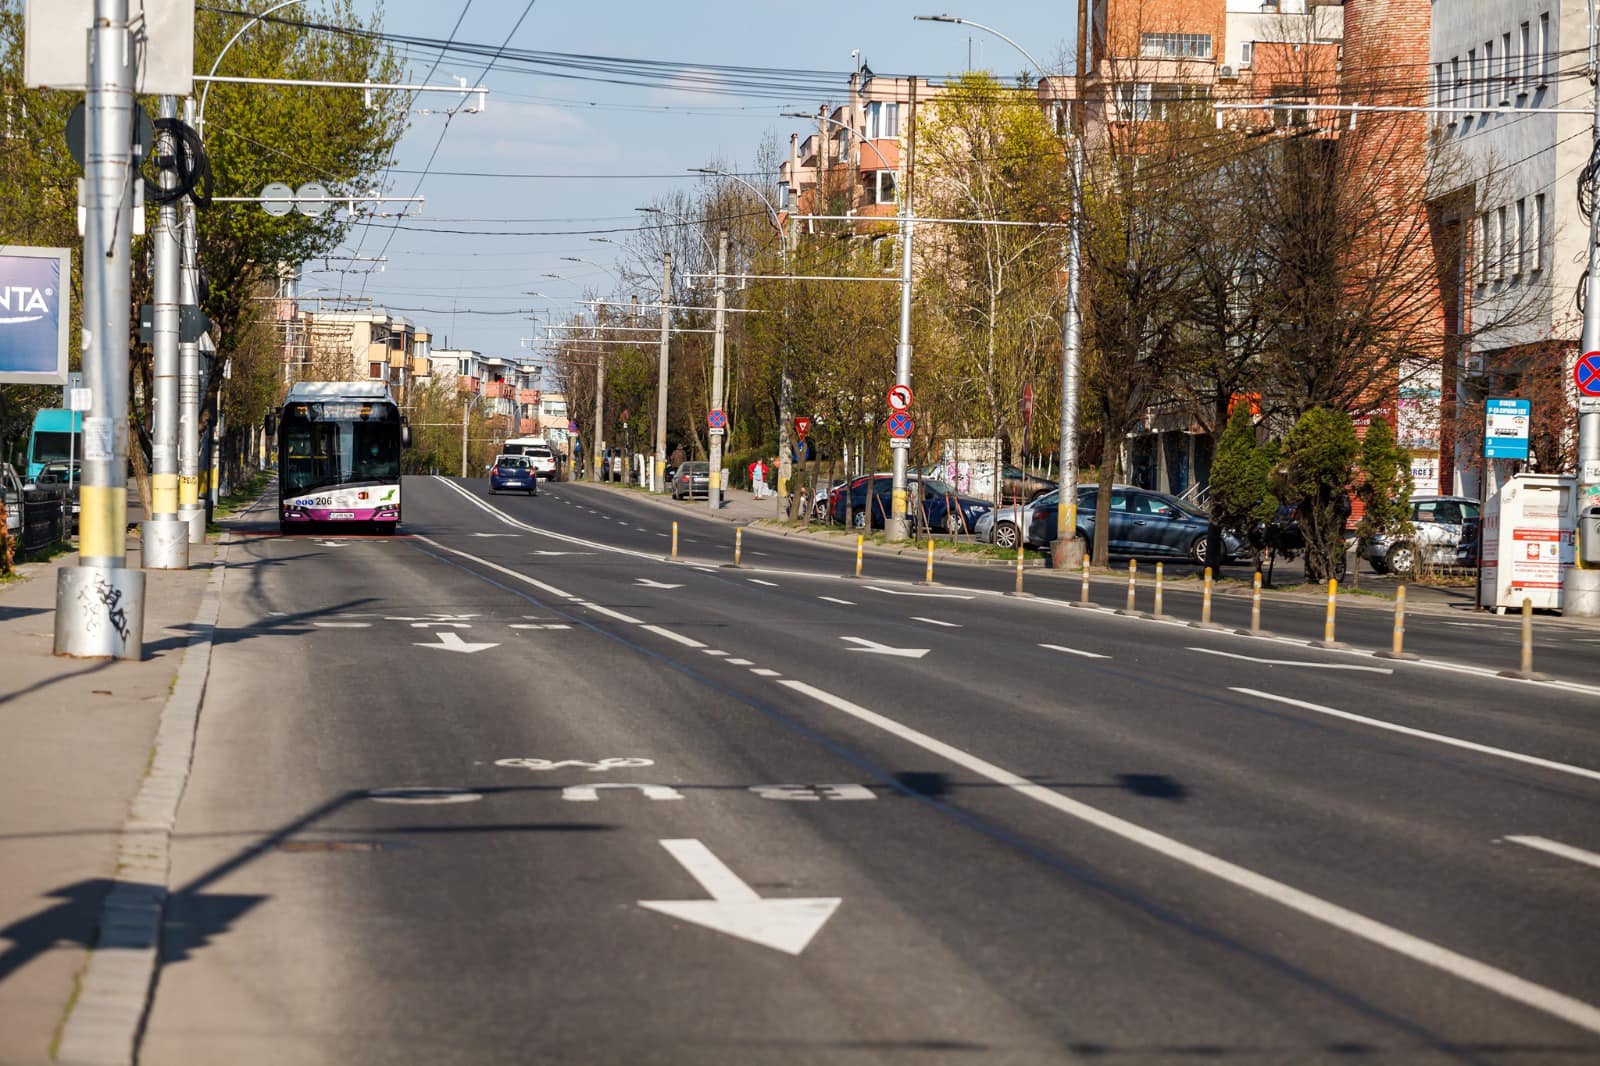 Mobilitatea fără emisii de carbon în zonele rurale și urbane din Cluj este singura modalitate de a implementa o tranziție ecologică/ Foto: Facebook - Emil Boc